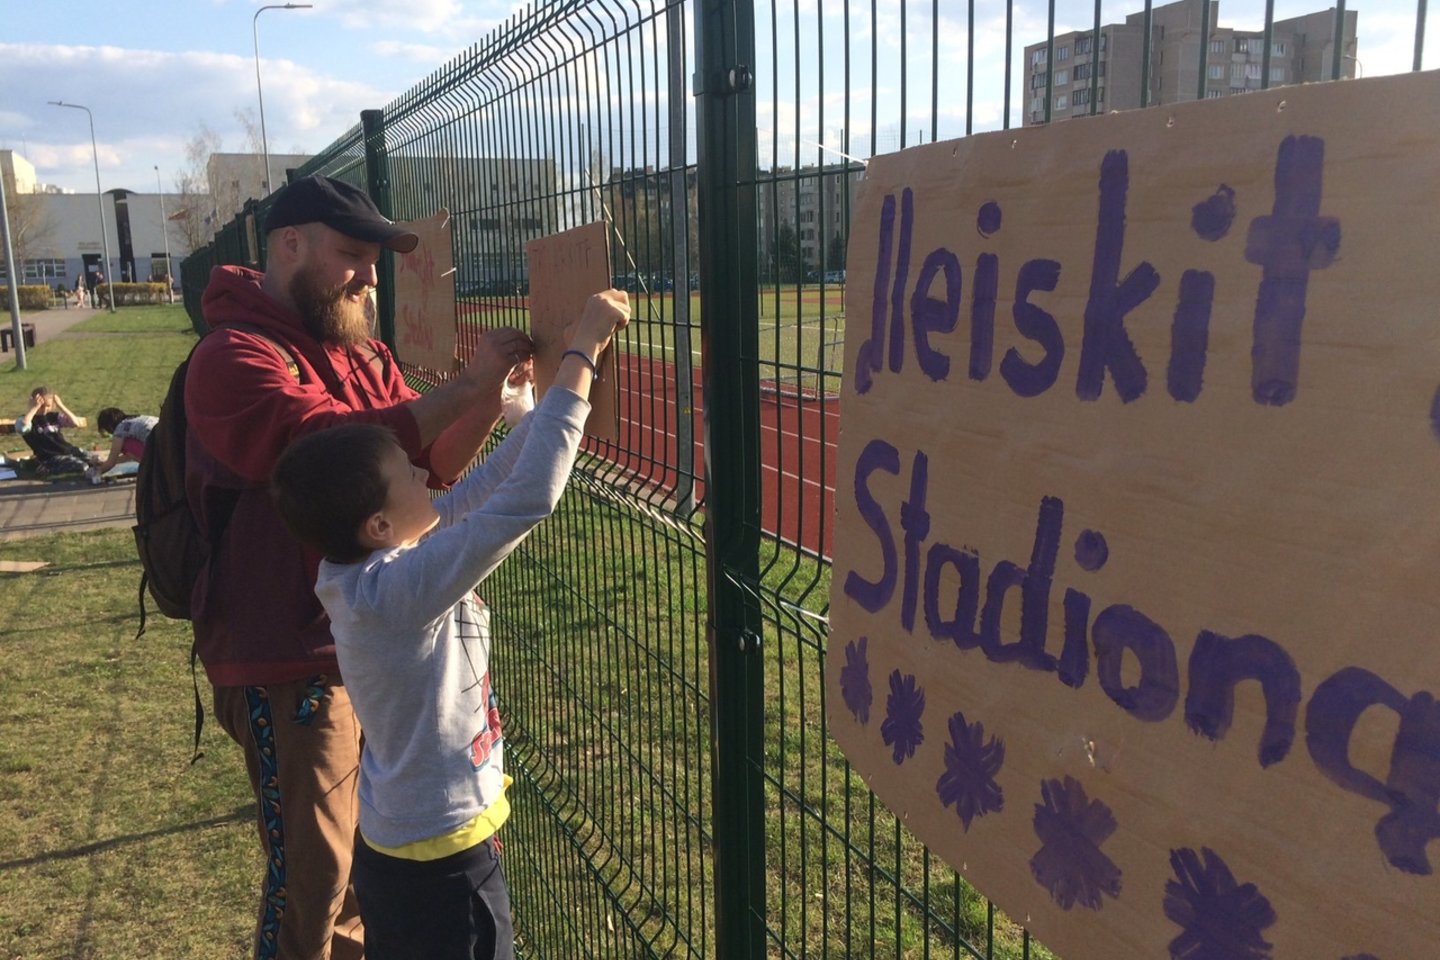  Pilaitės vaikai ir jaunuoliai prašo, kad M.Mažvydo progimnazijos stadionas būtų prieinamas visiems.<br> T.Kurapkaičio nuotr.